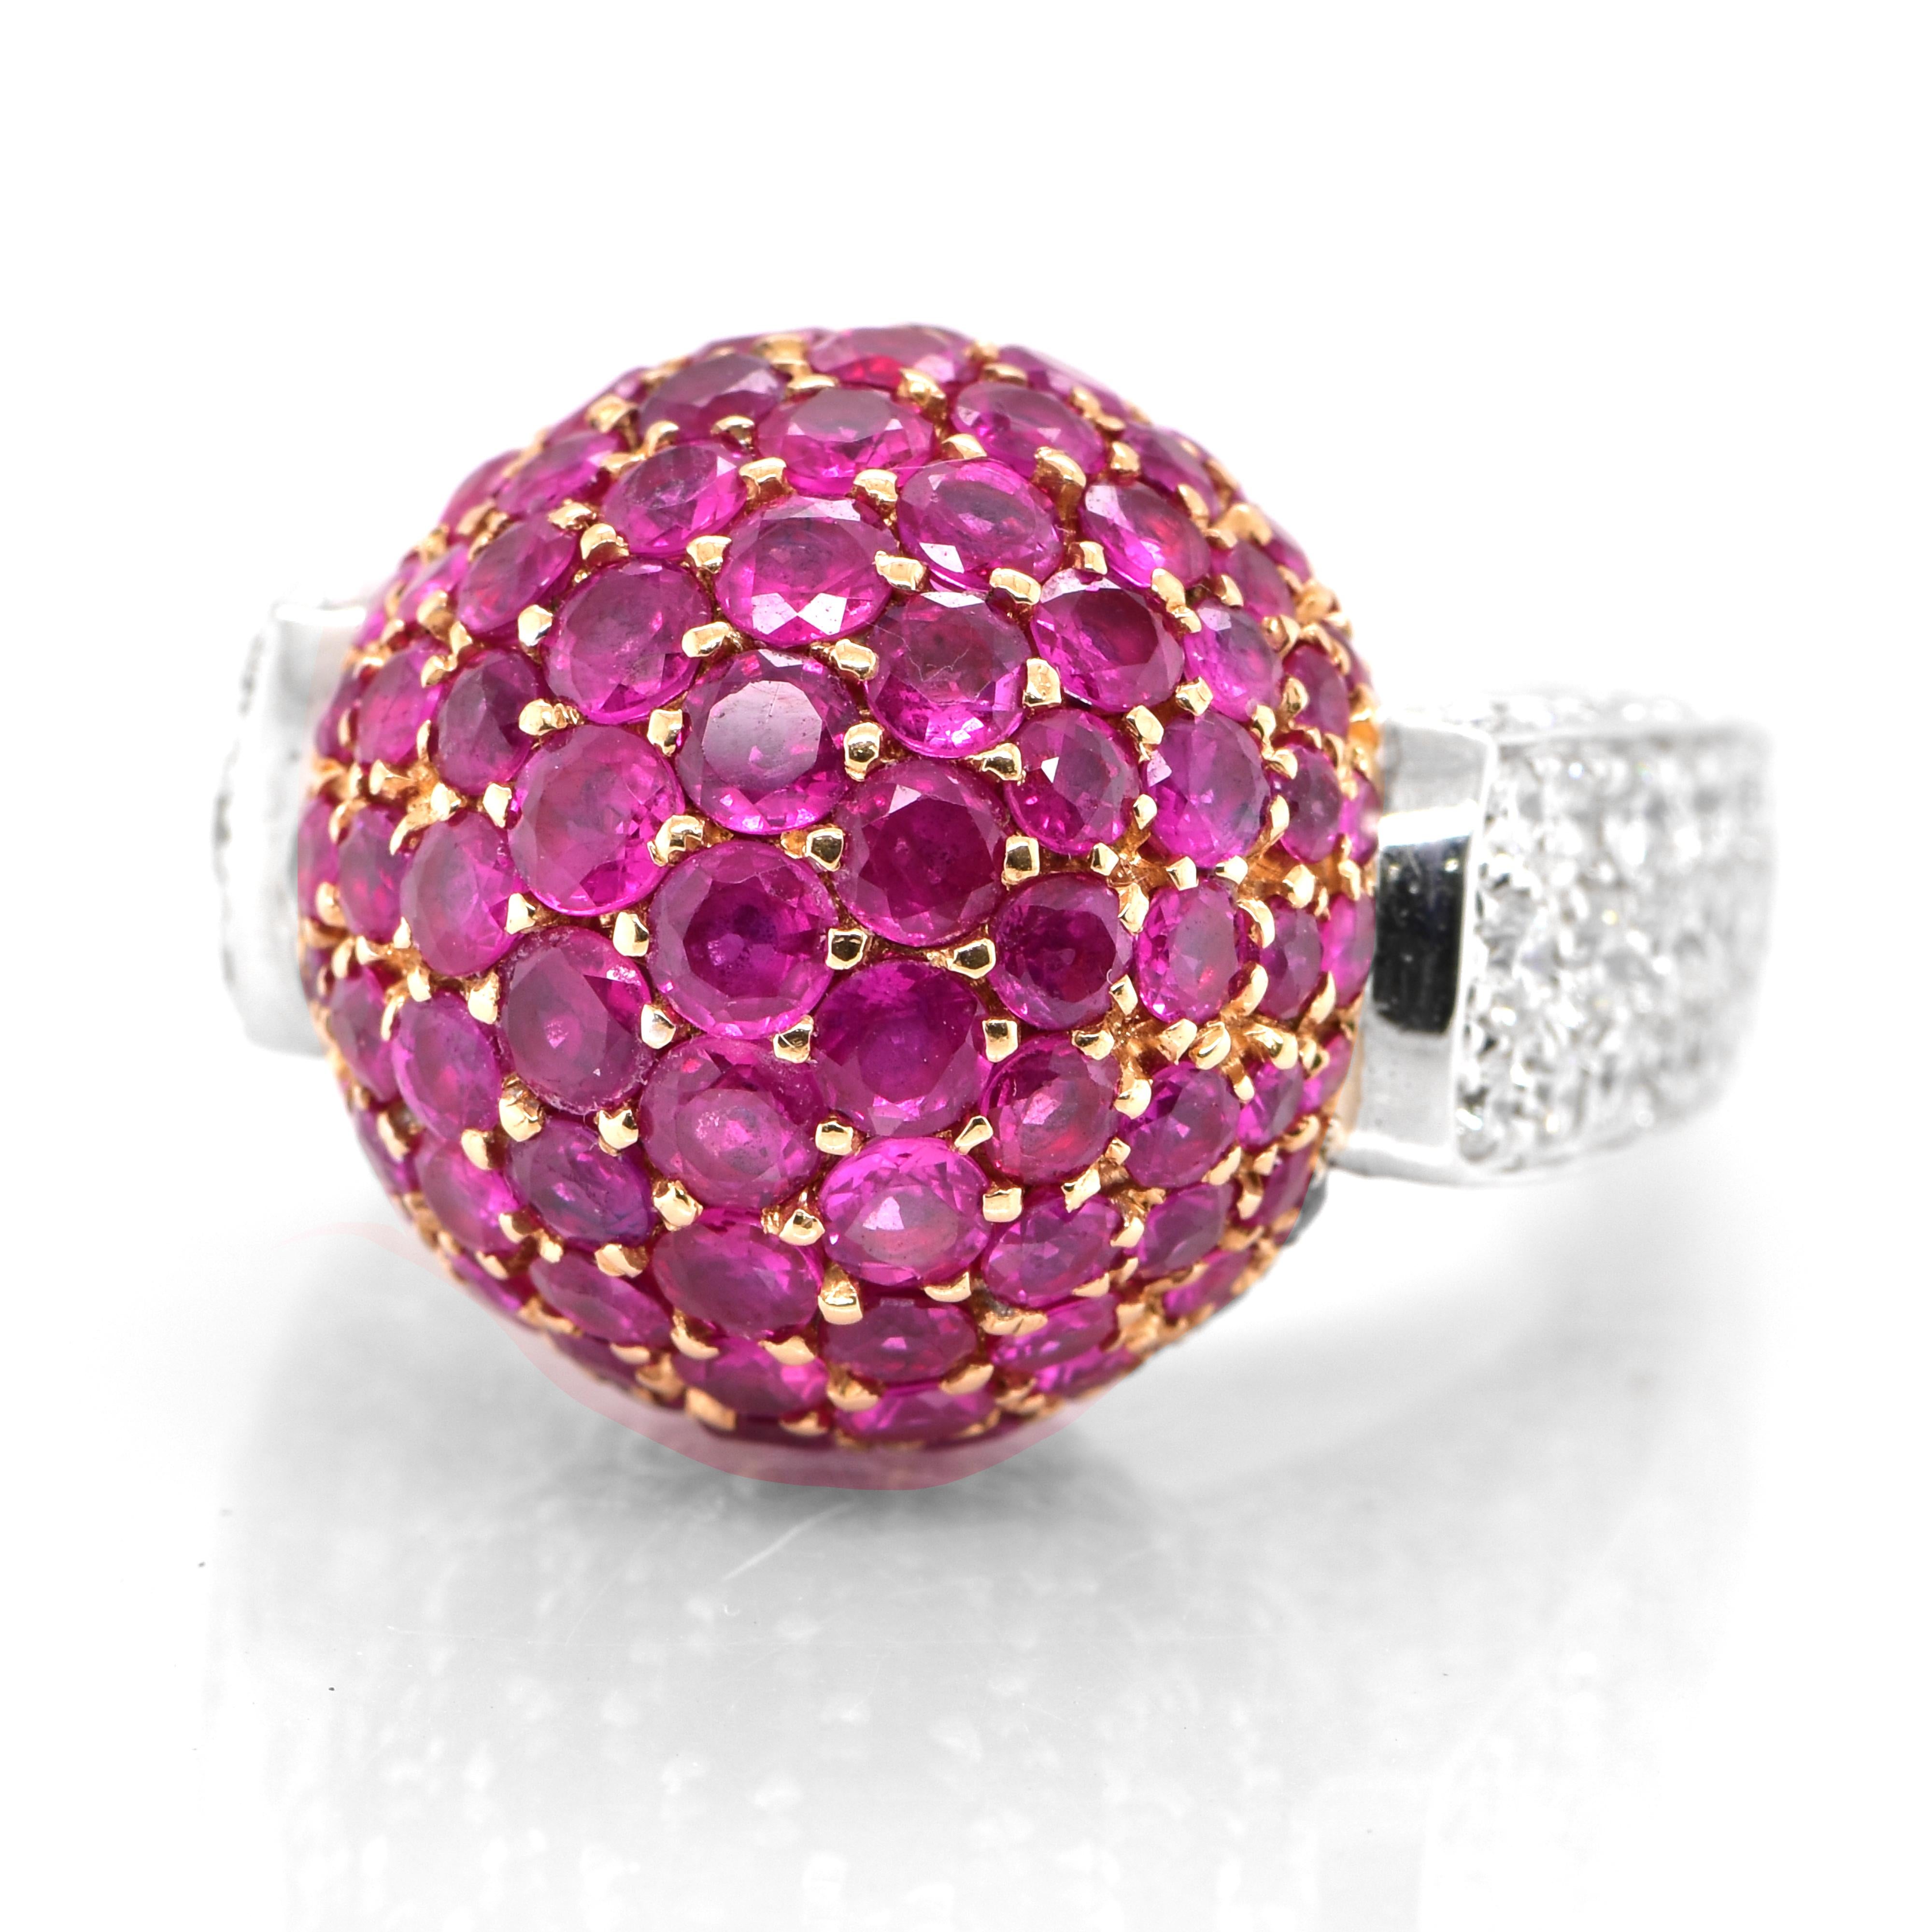 Ein wunderschöner Ring aus 18 Karat Gold mit 5,86 Karat natürlichen Rubinen und 3,32 Karat Diamanten. Rubine werden im Sanskrit als 